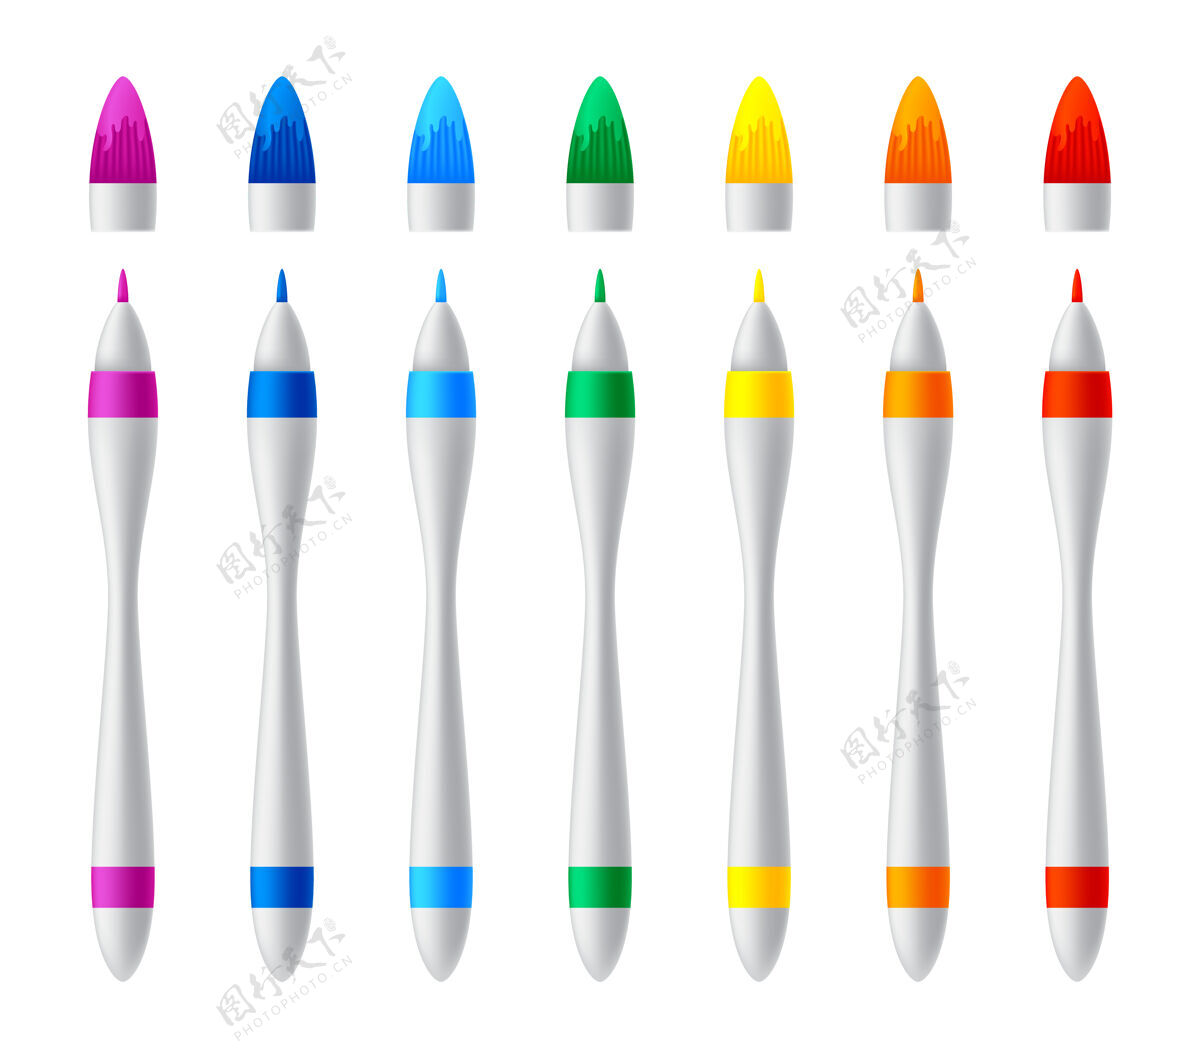 划船一套彩色标记彩色文具各种